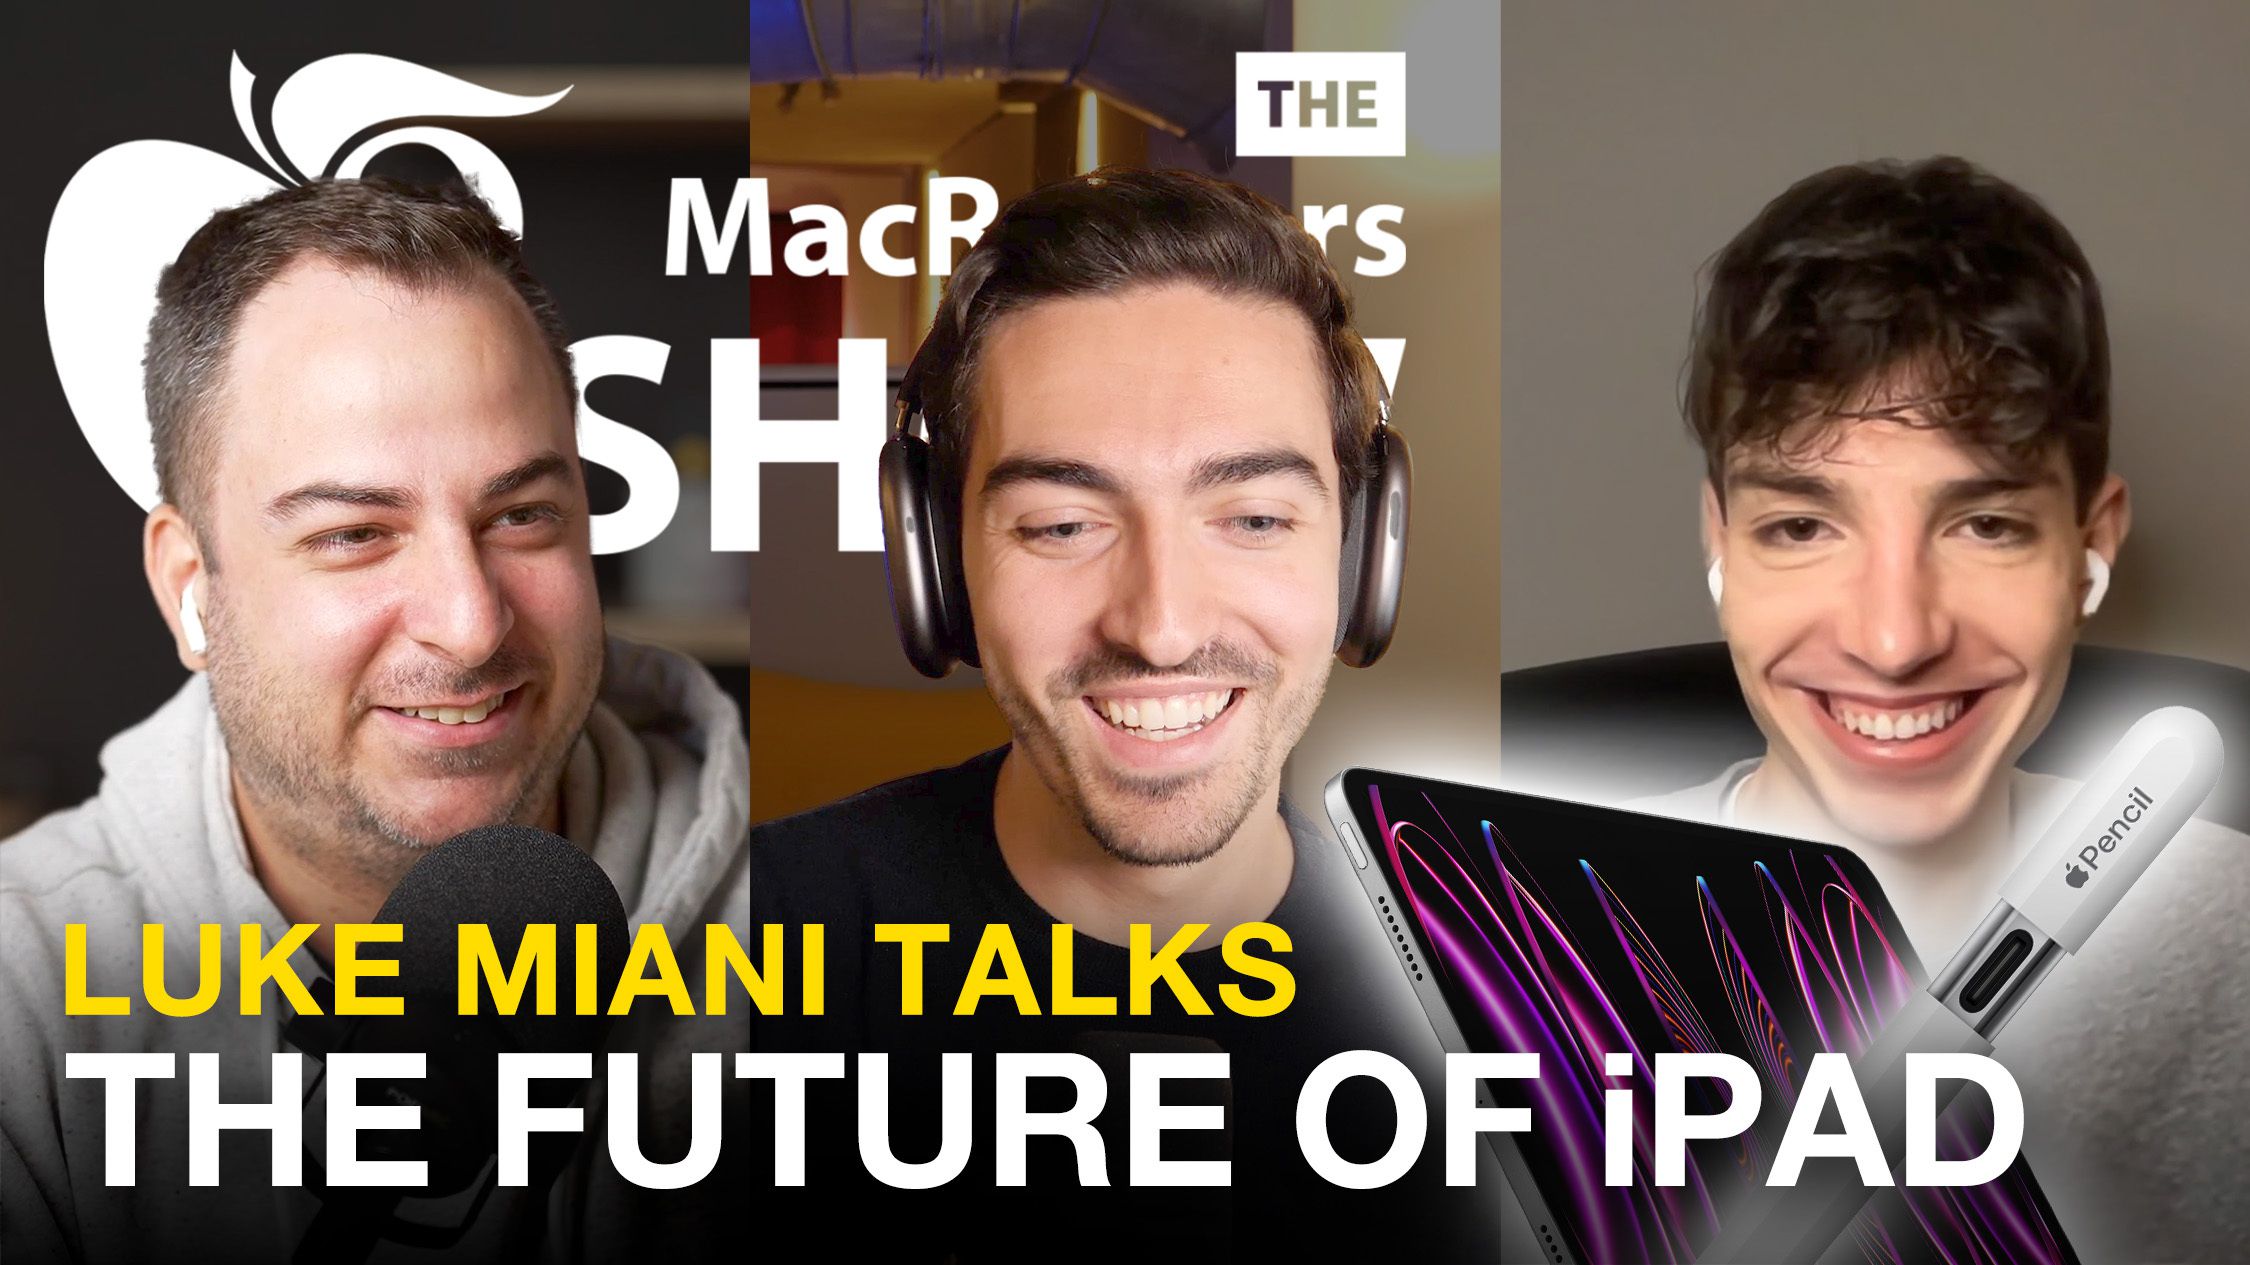 The MacRumors Show: Luke Miani habla sobre el futuro del iPad y más